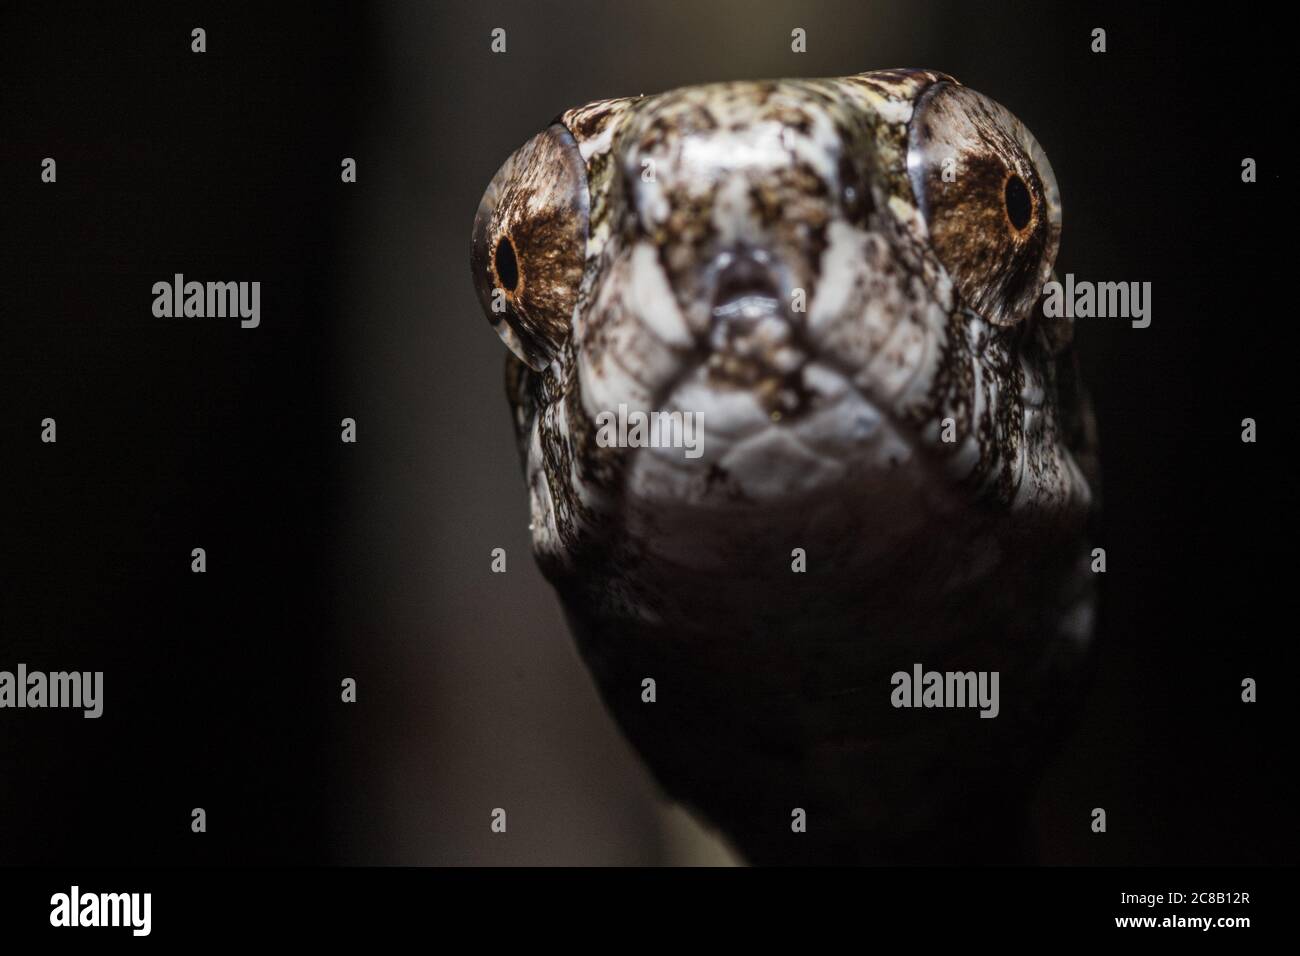 Aplopeltura boa, il serpente sgranato dal Sud-est asiatico. Questo serpente è stato trovato per avere movimento unico di sega della ganascia che lo aiuta ad estrarre le lumache. Foto Stock